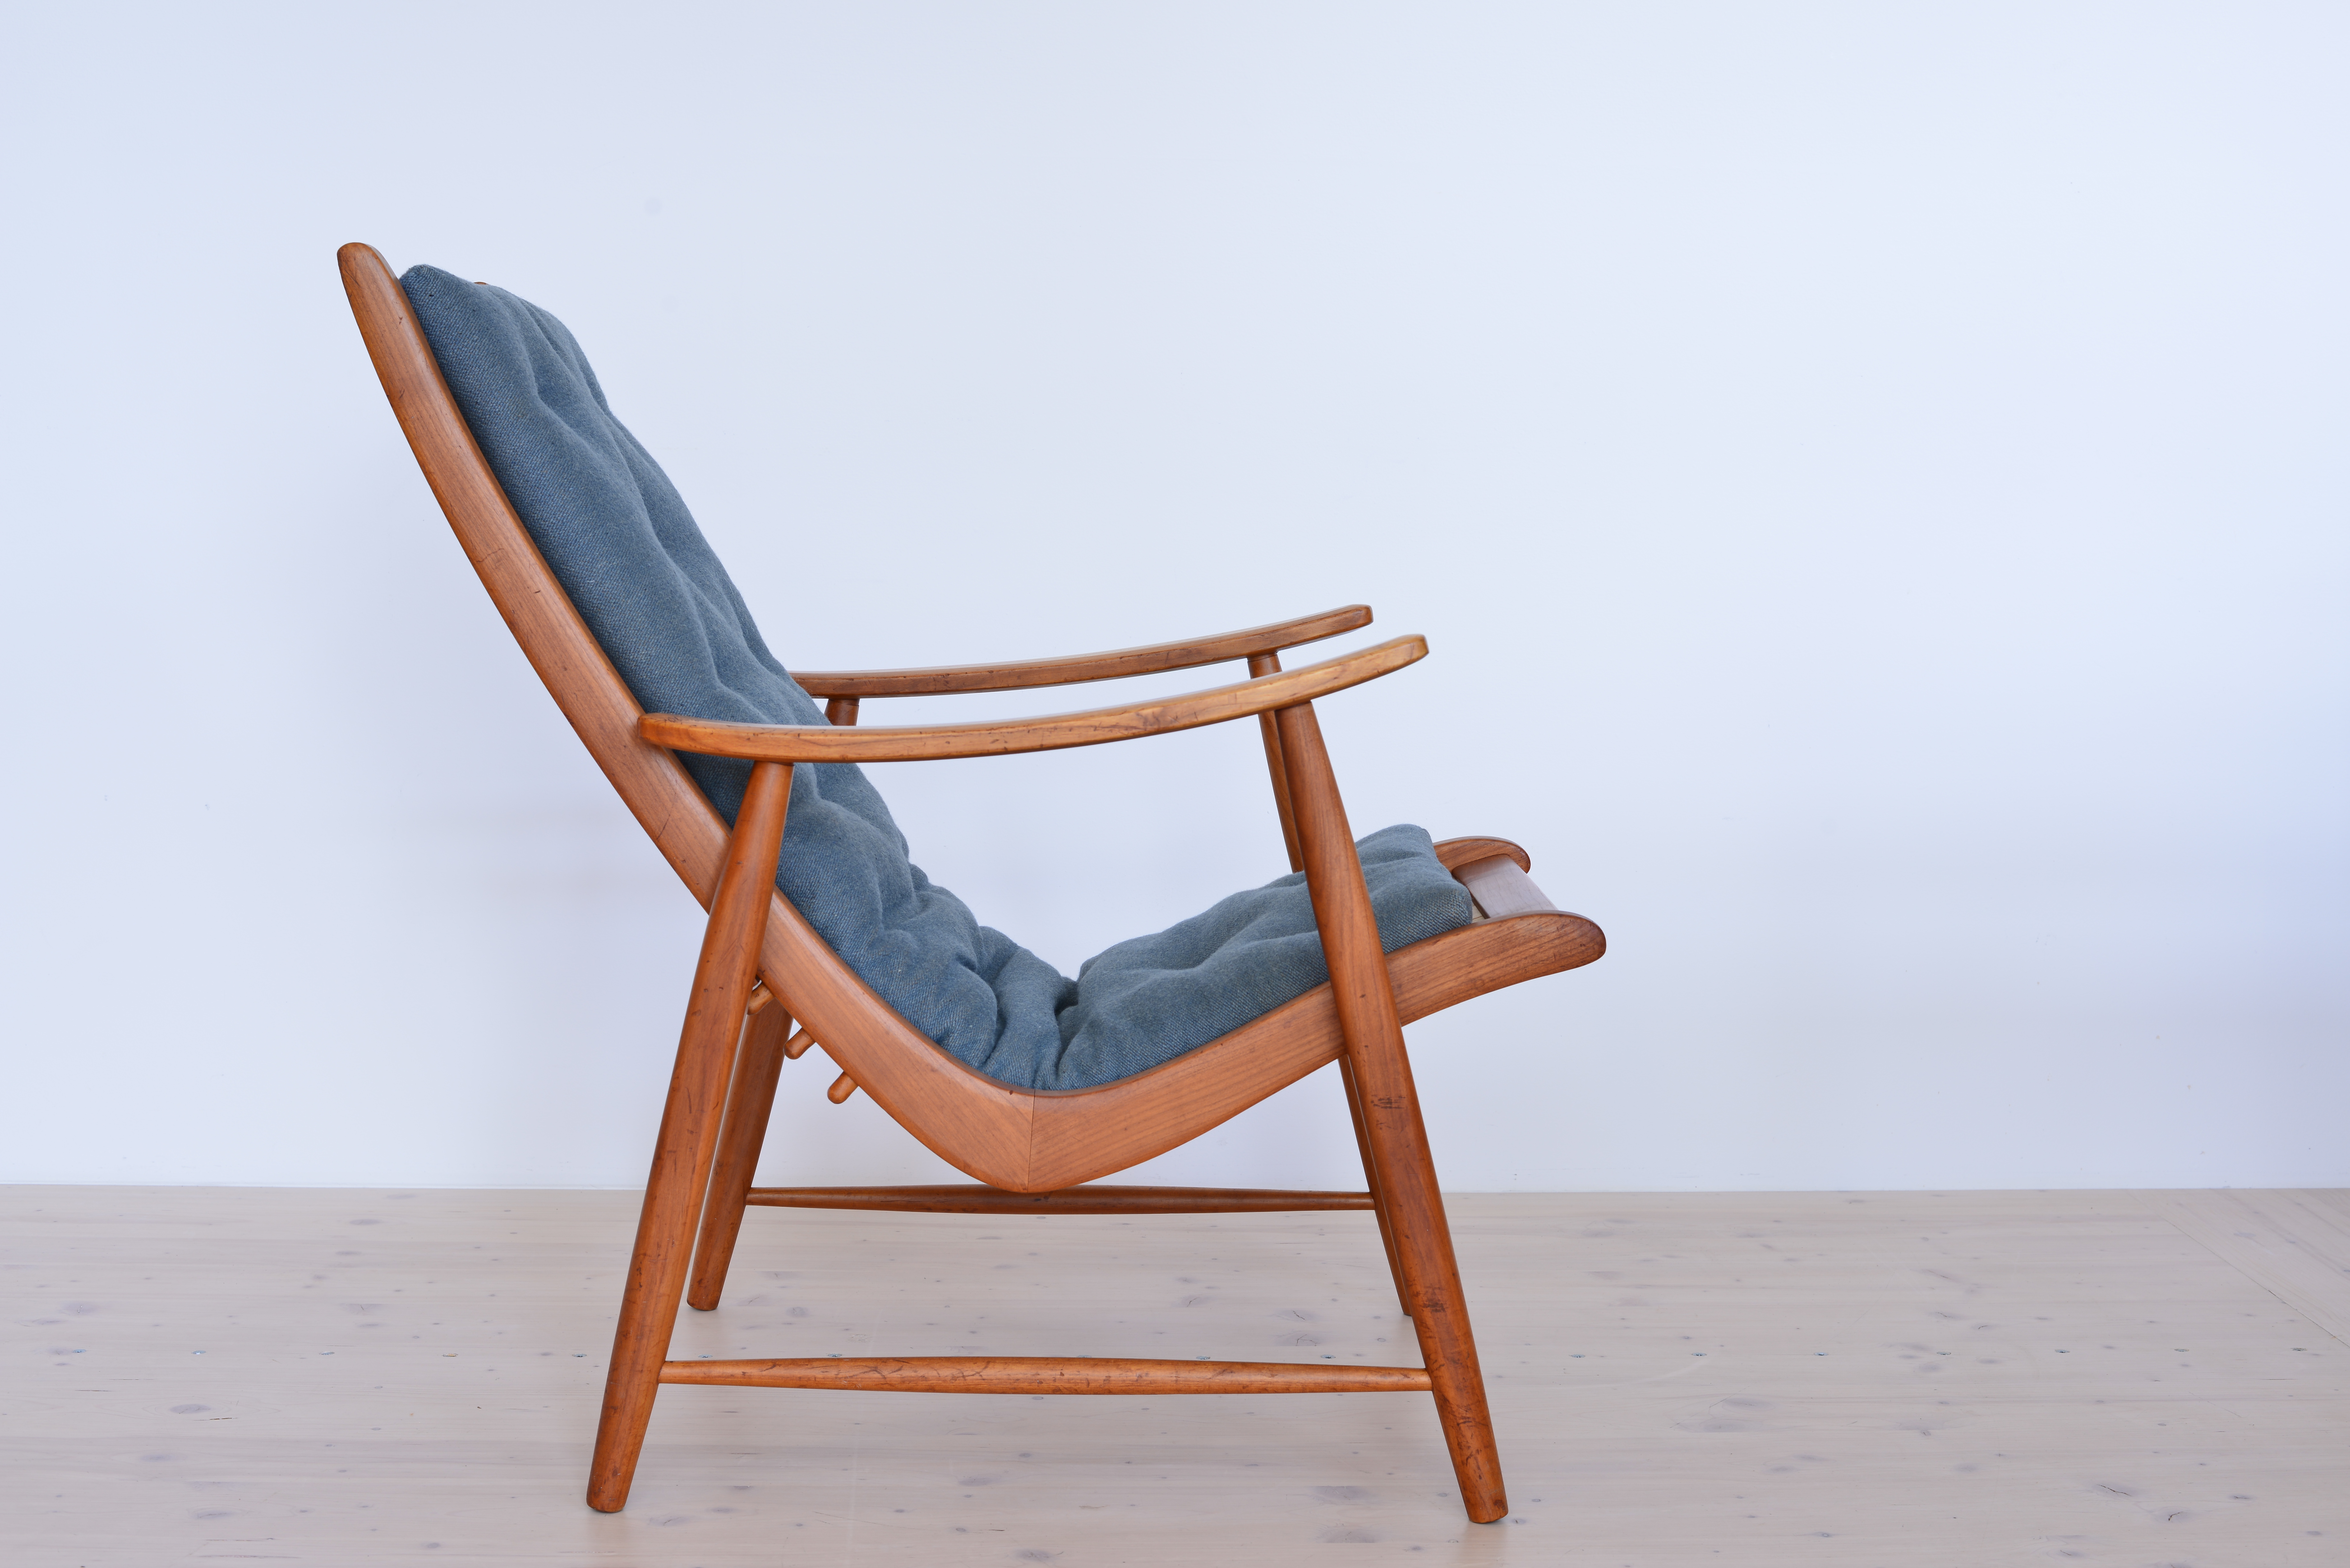 Jacob Muller Ronco Chair Original available at heyday möbel, Grubenstrasse 19, 8045 Zurich, Switzerland